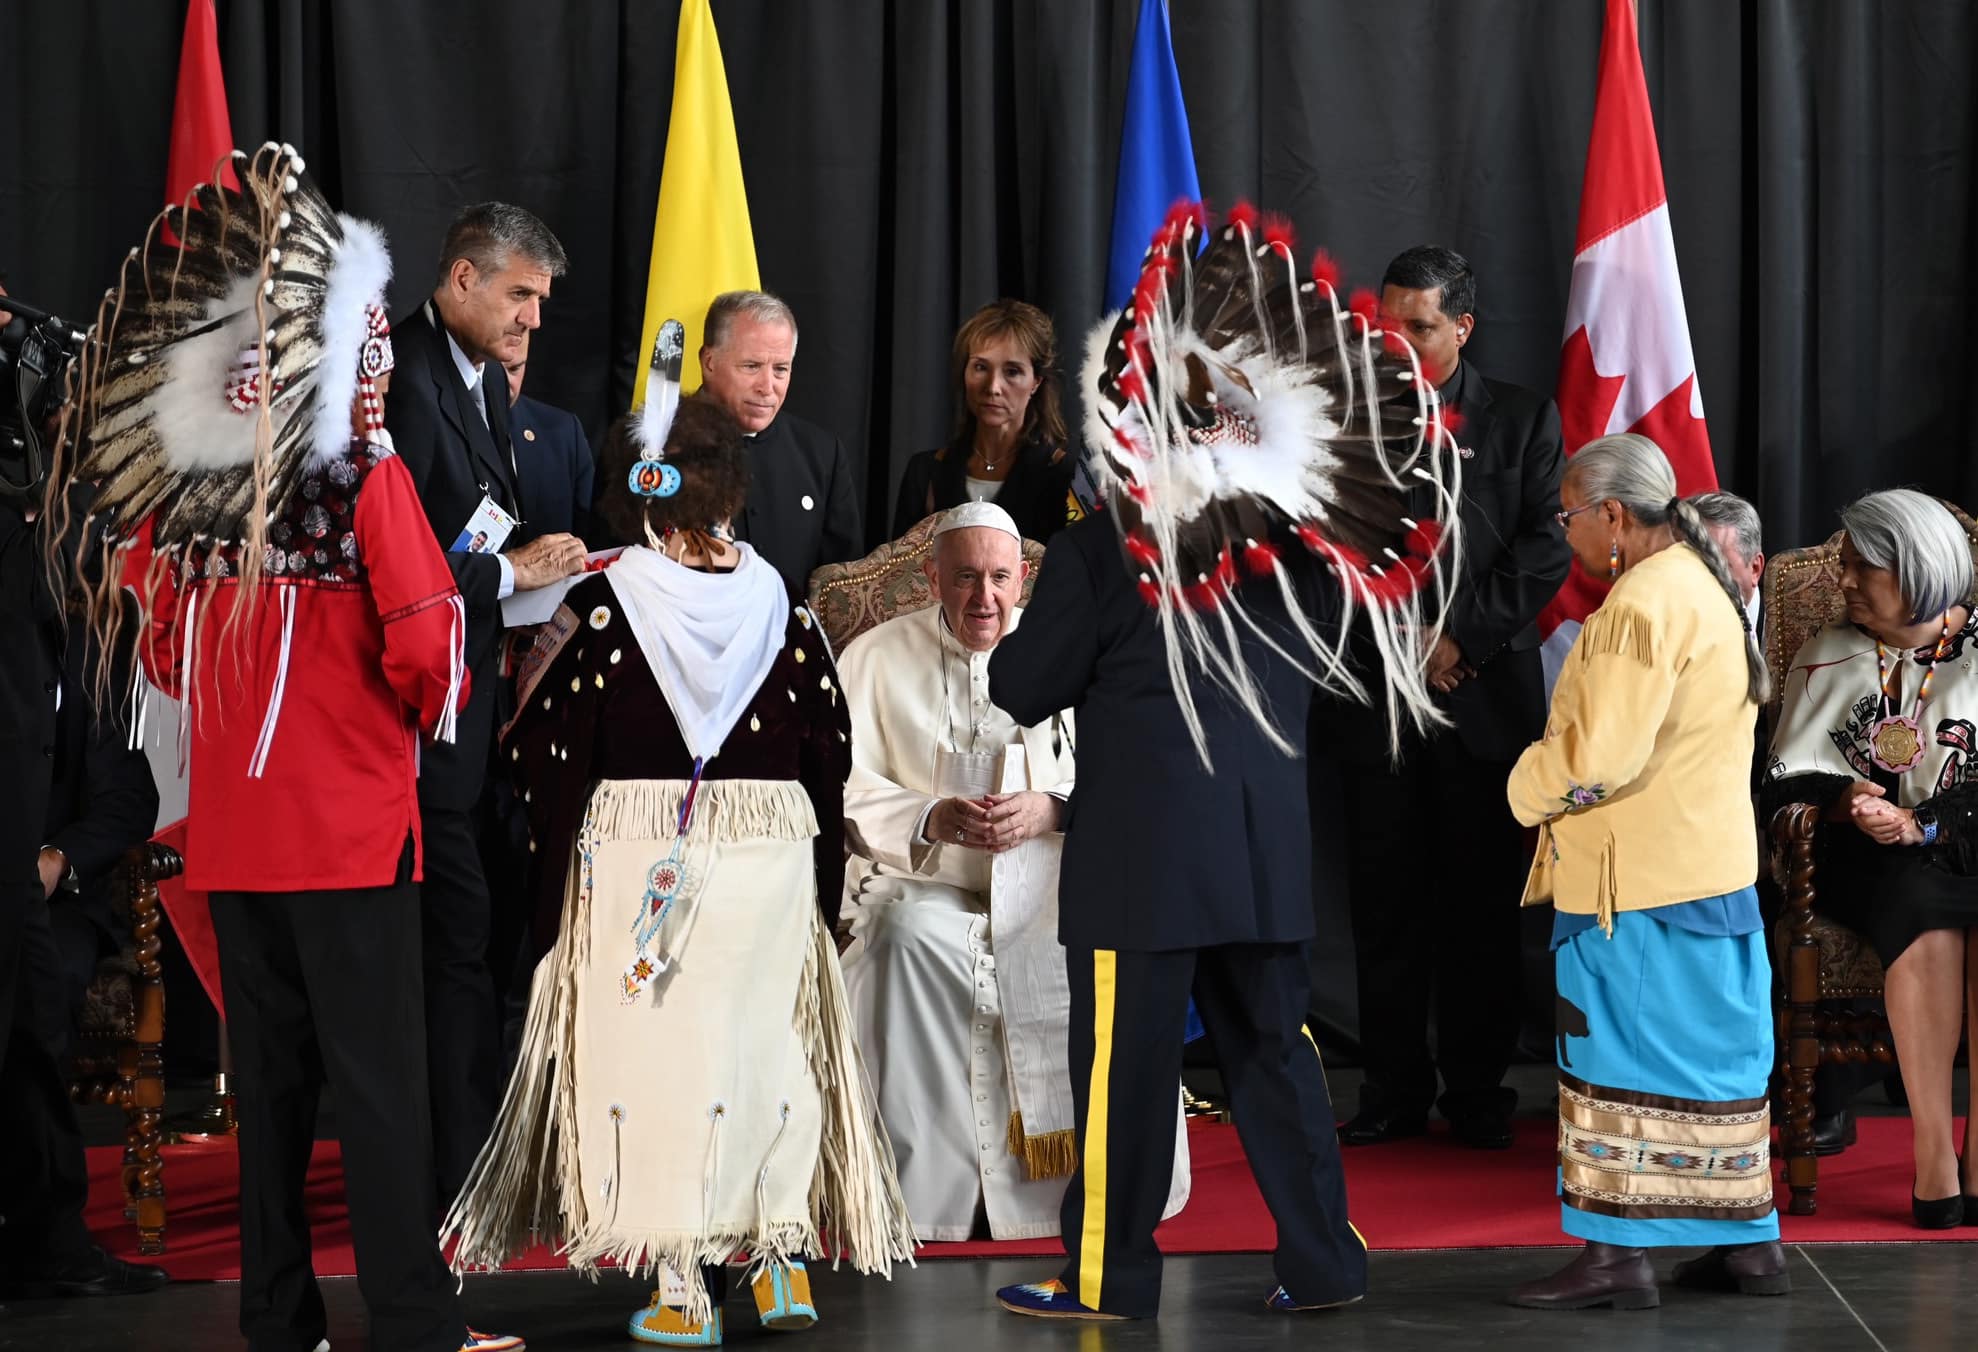 El Papa Francisco (C) recibido por representantes de los pueblos indígenas de Canadá.